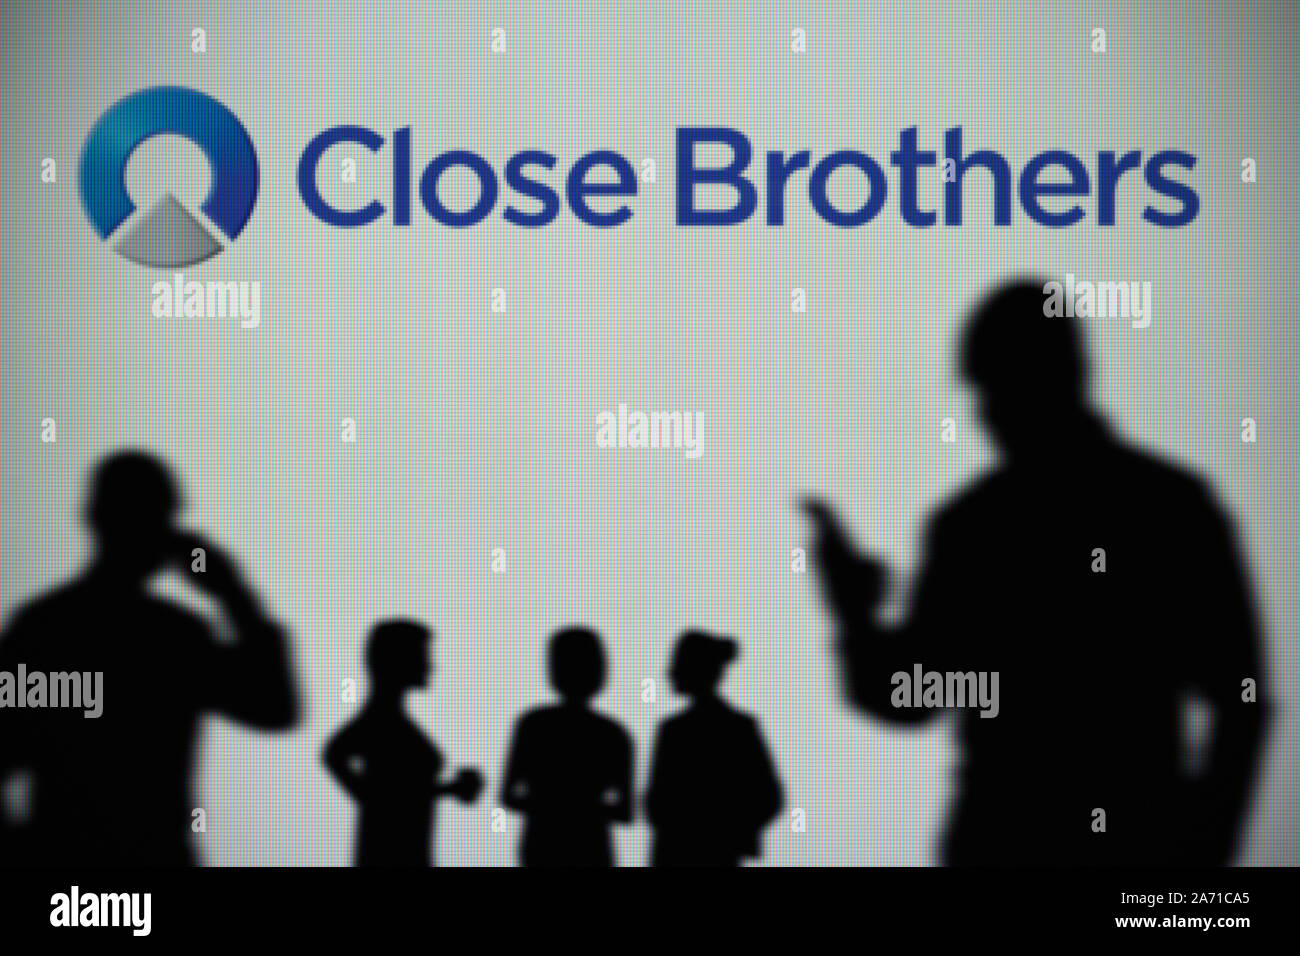 Il Close Brothers Group logo è visibile su uno schermo a LED in background mentre si profila una persona utilizza uno smartphone (solo uso editoriale) Foto Stock